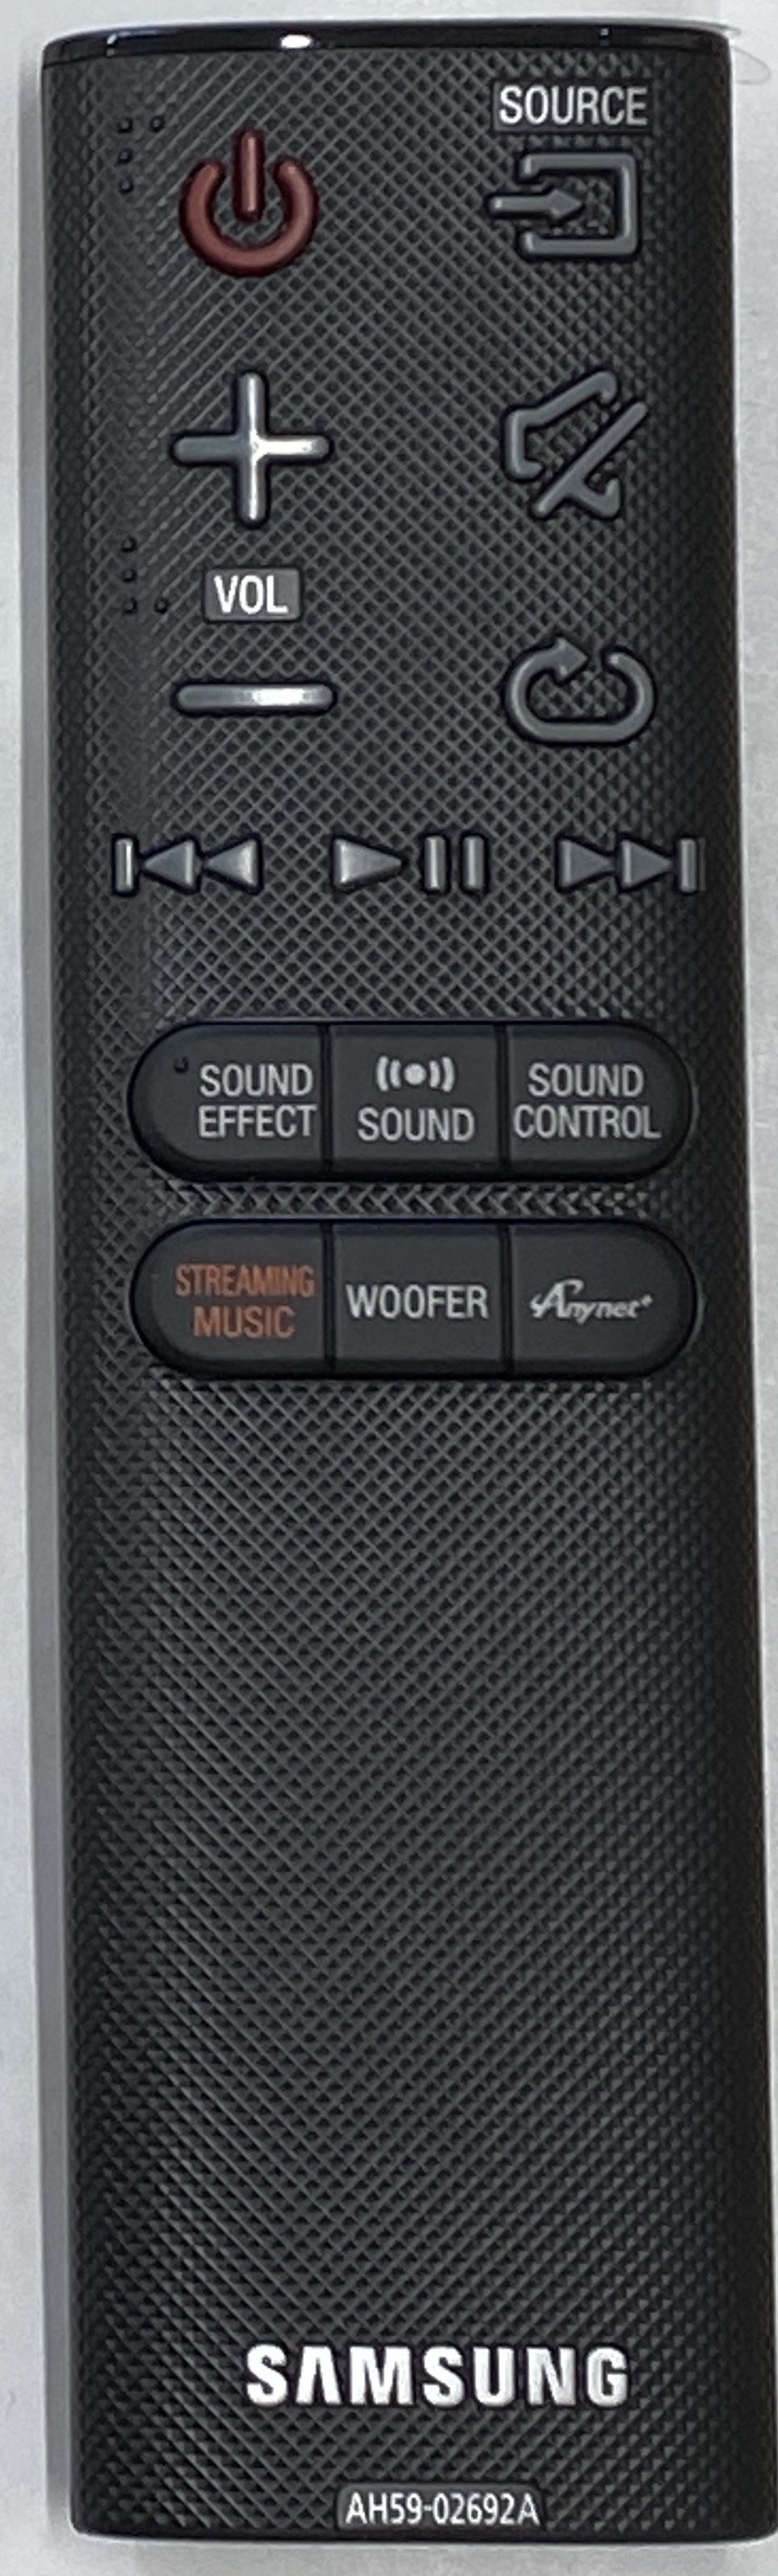 SAMSUNG HW-J8501 Remote Control Original